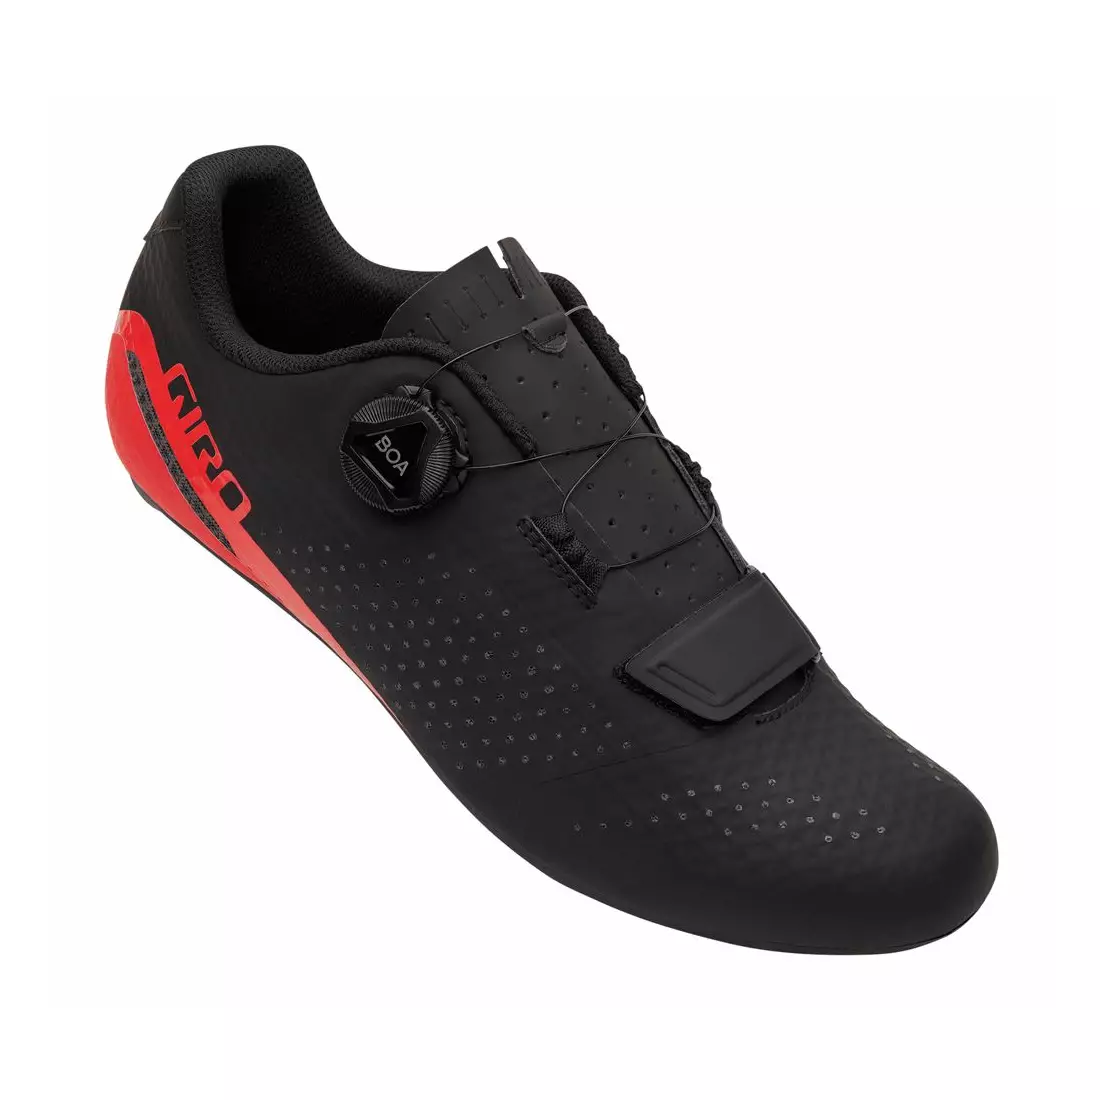 GIRO pánská cyklistická obuv CADET black bright red GR-7126122